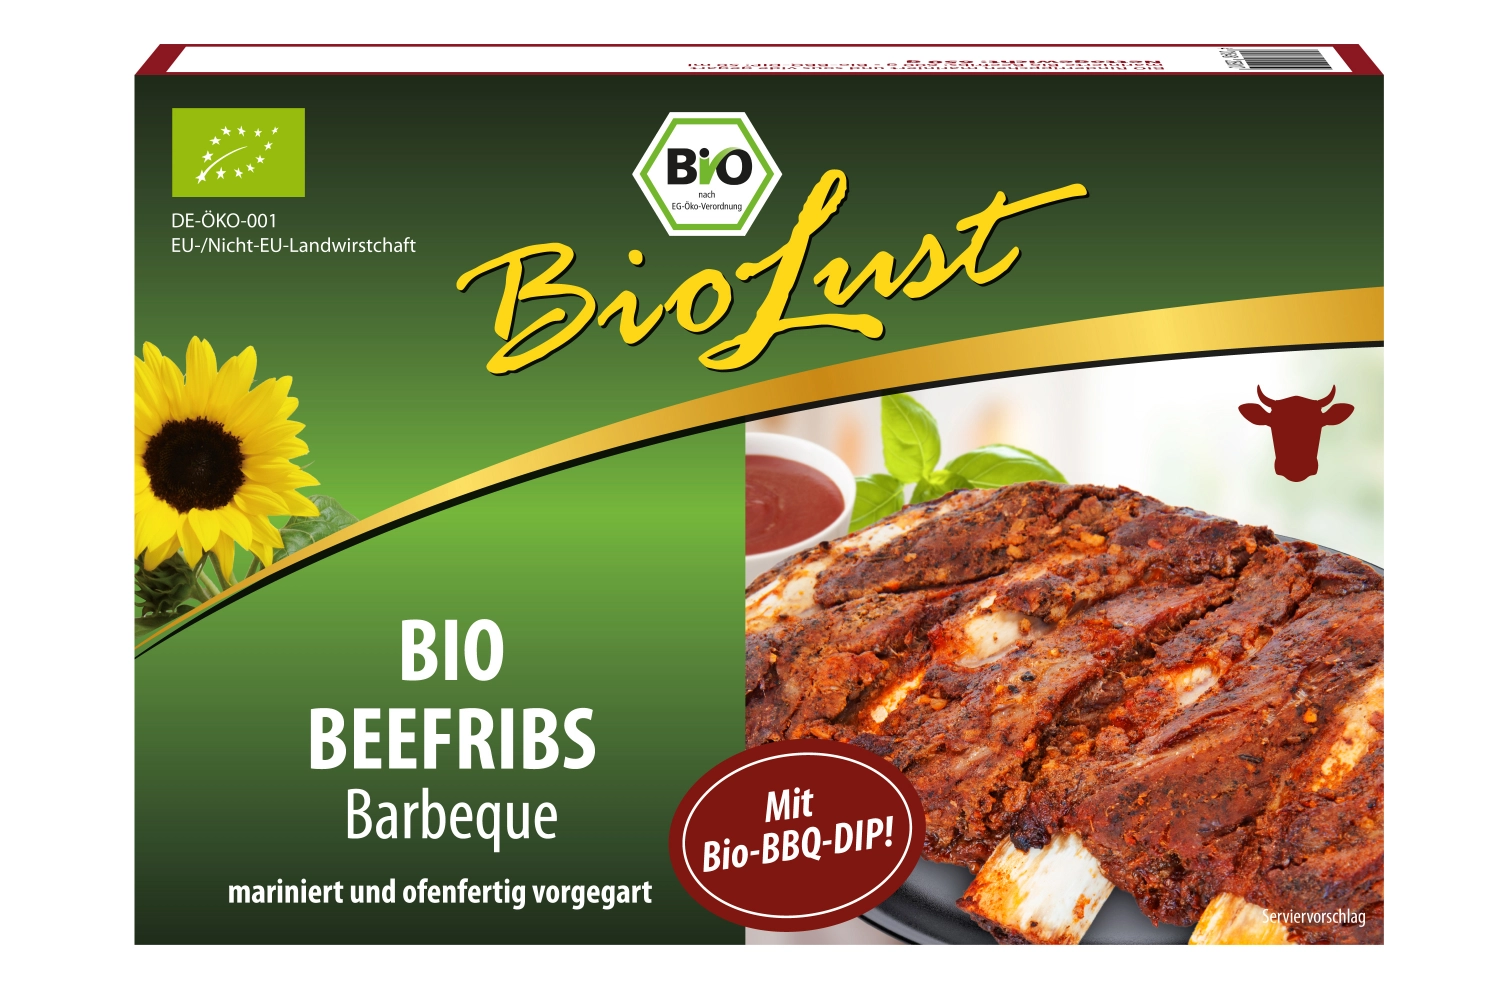 Beef Ribs vorgegart und mariniert 650g BioLust